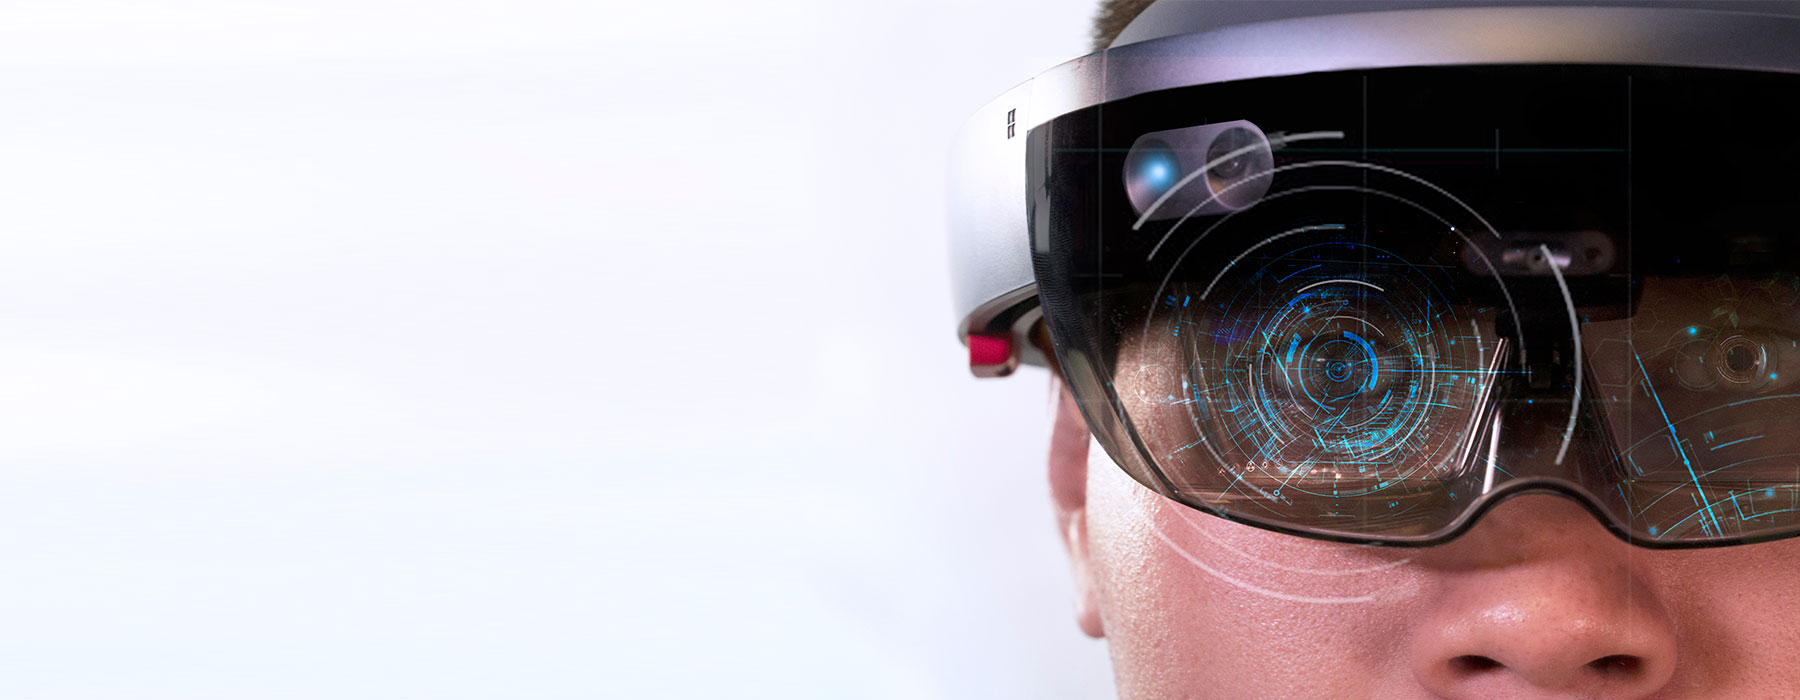 Articolo Microsoft Azure e HoloLens: la mixed reality in azienda Immagine